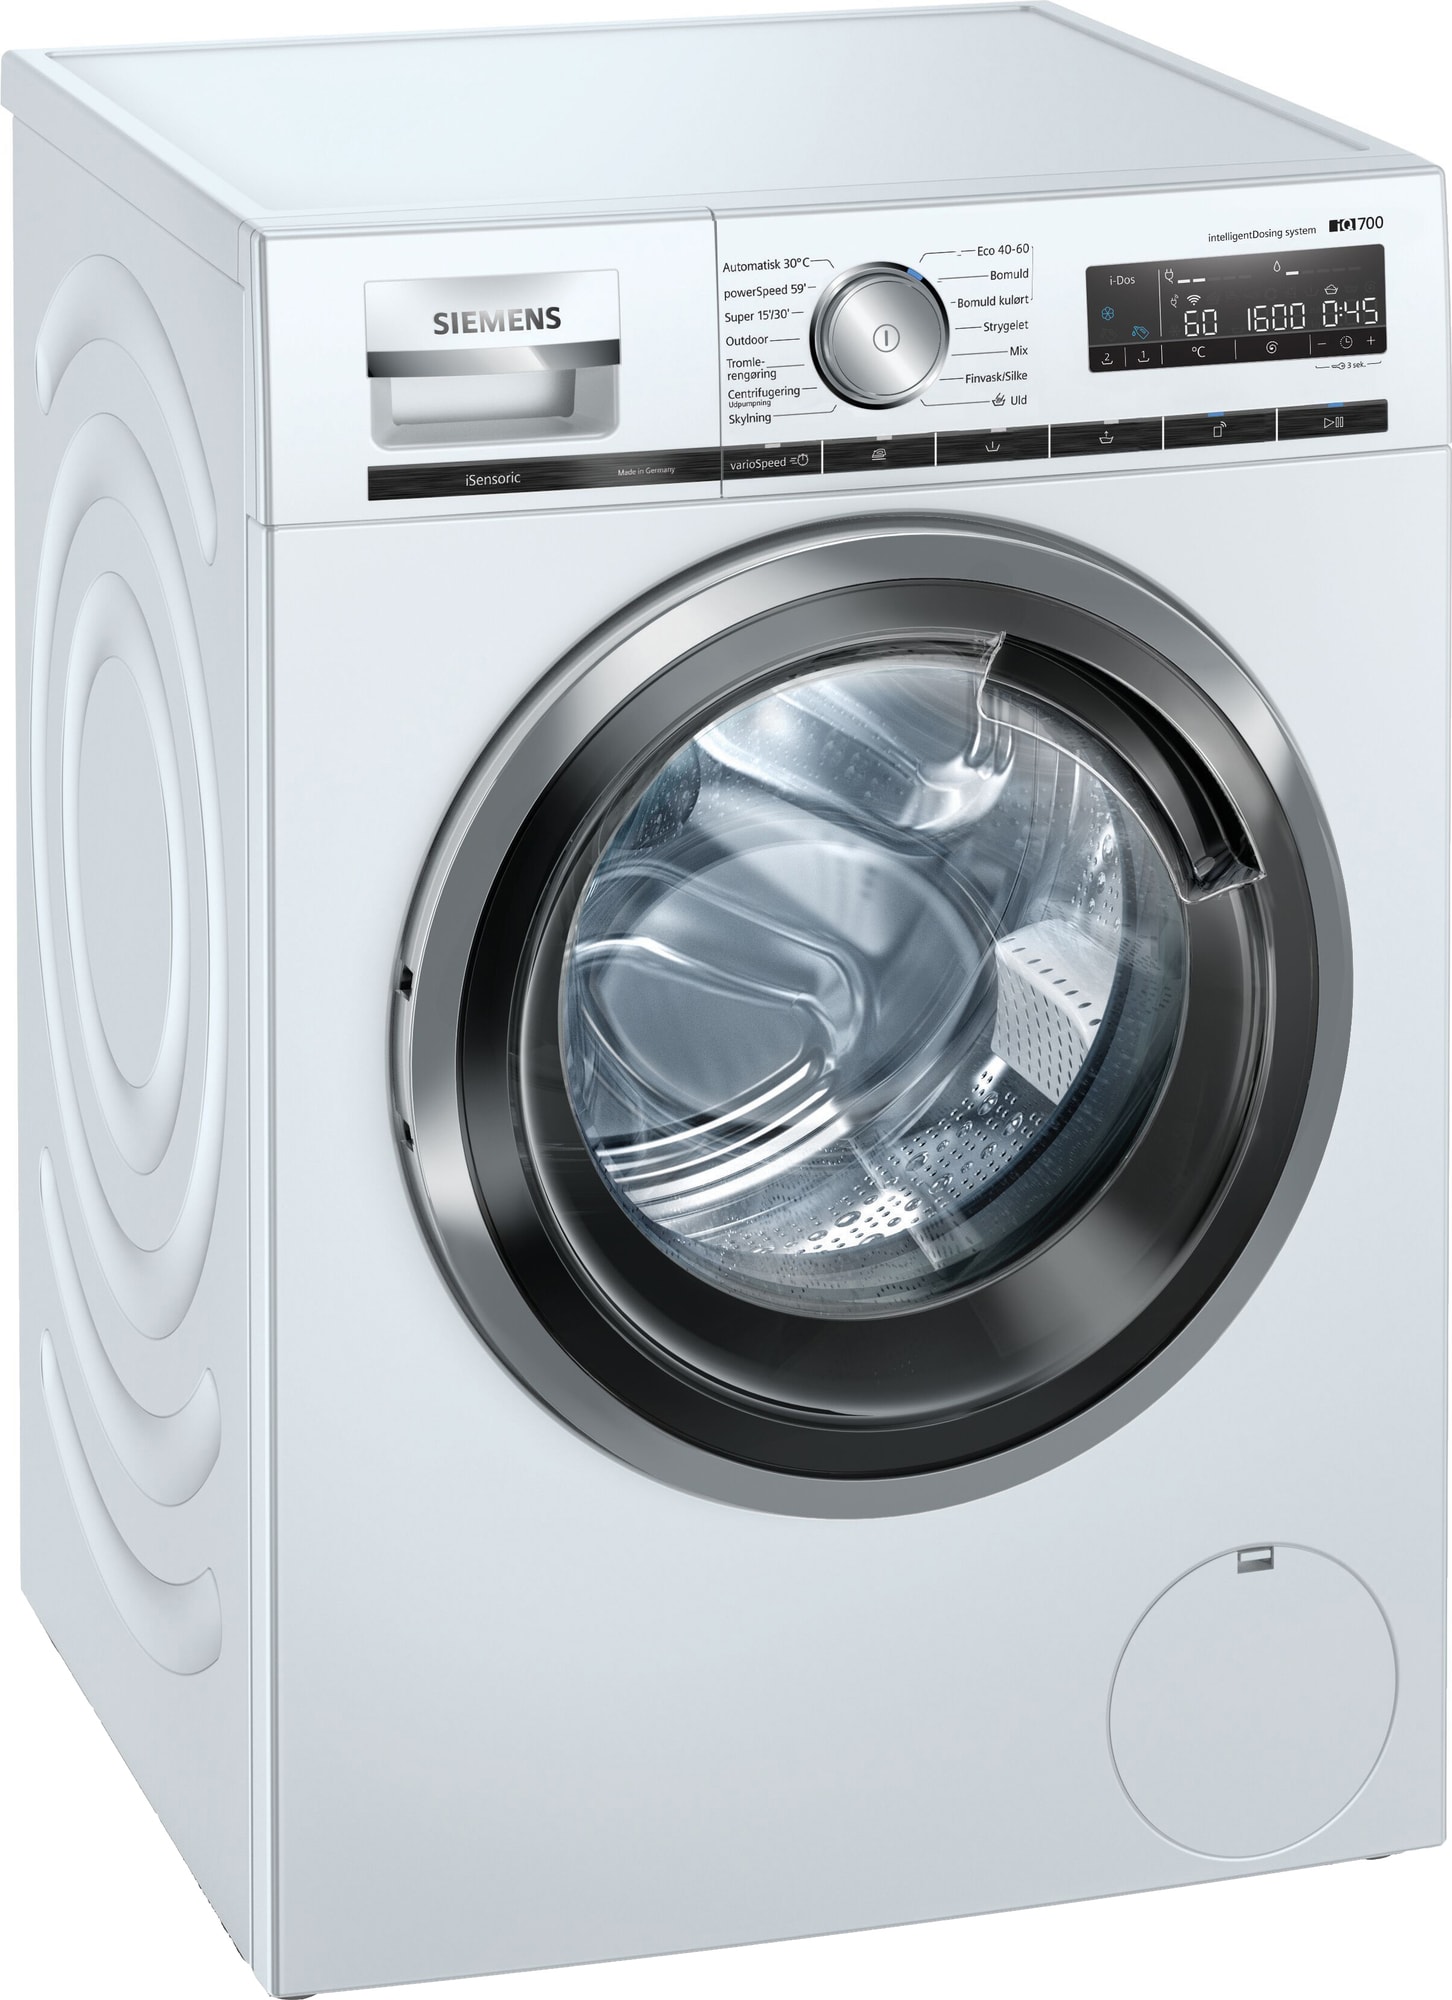 Bedste vaskemaskiner i test og pris – Tit billige tilbud - 2023